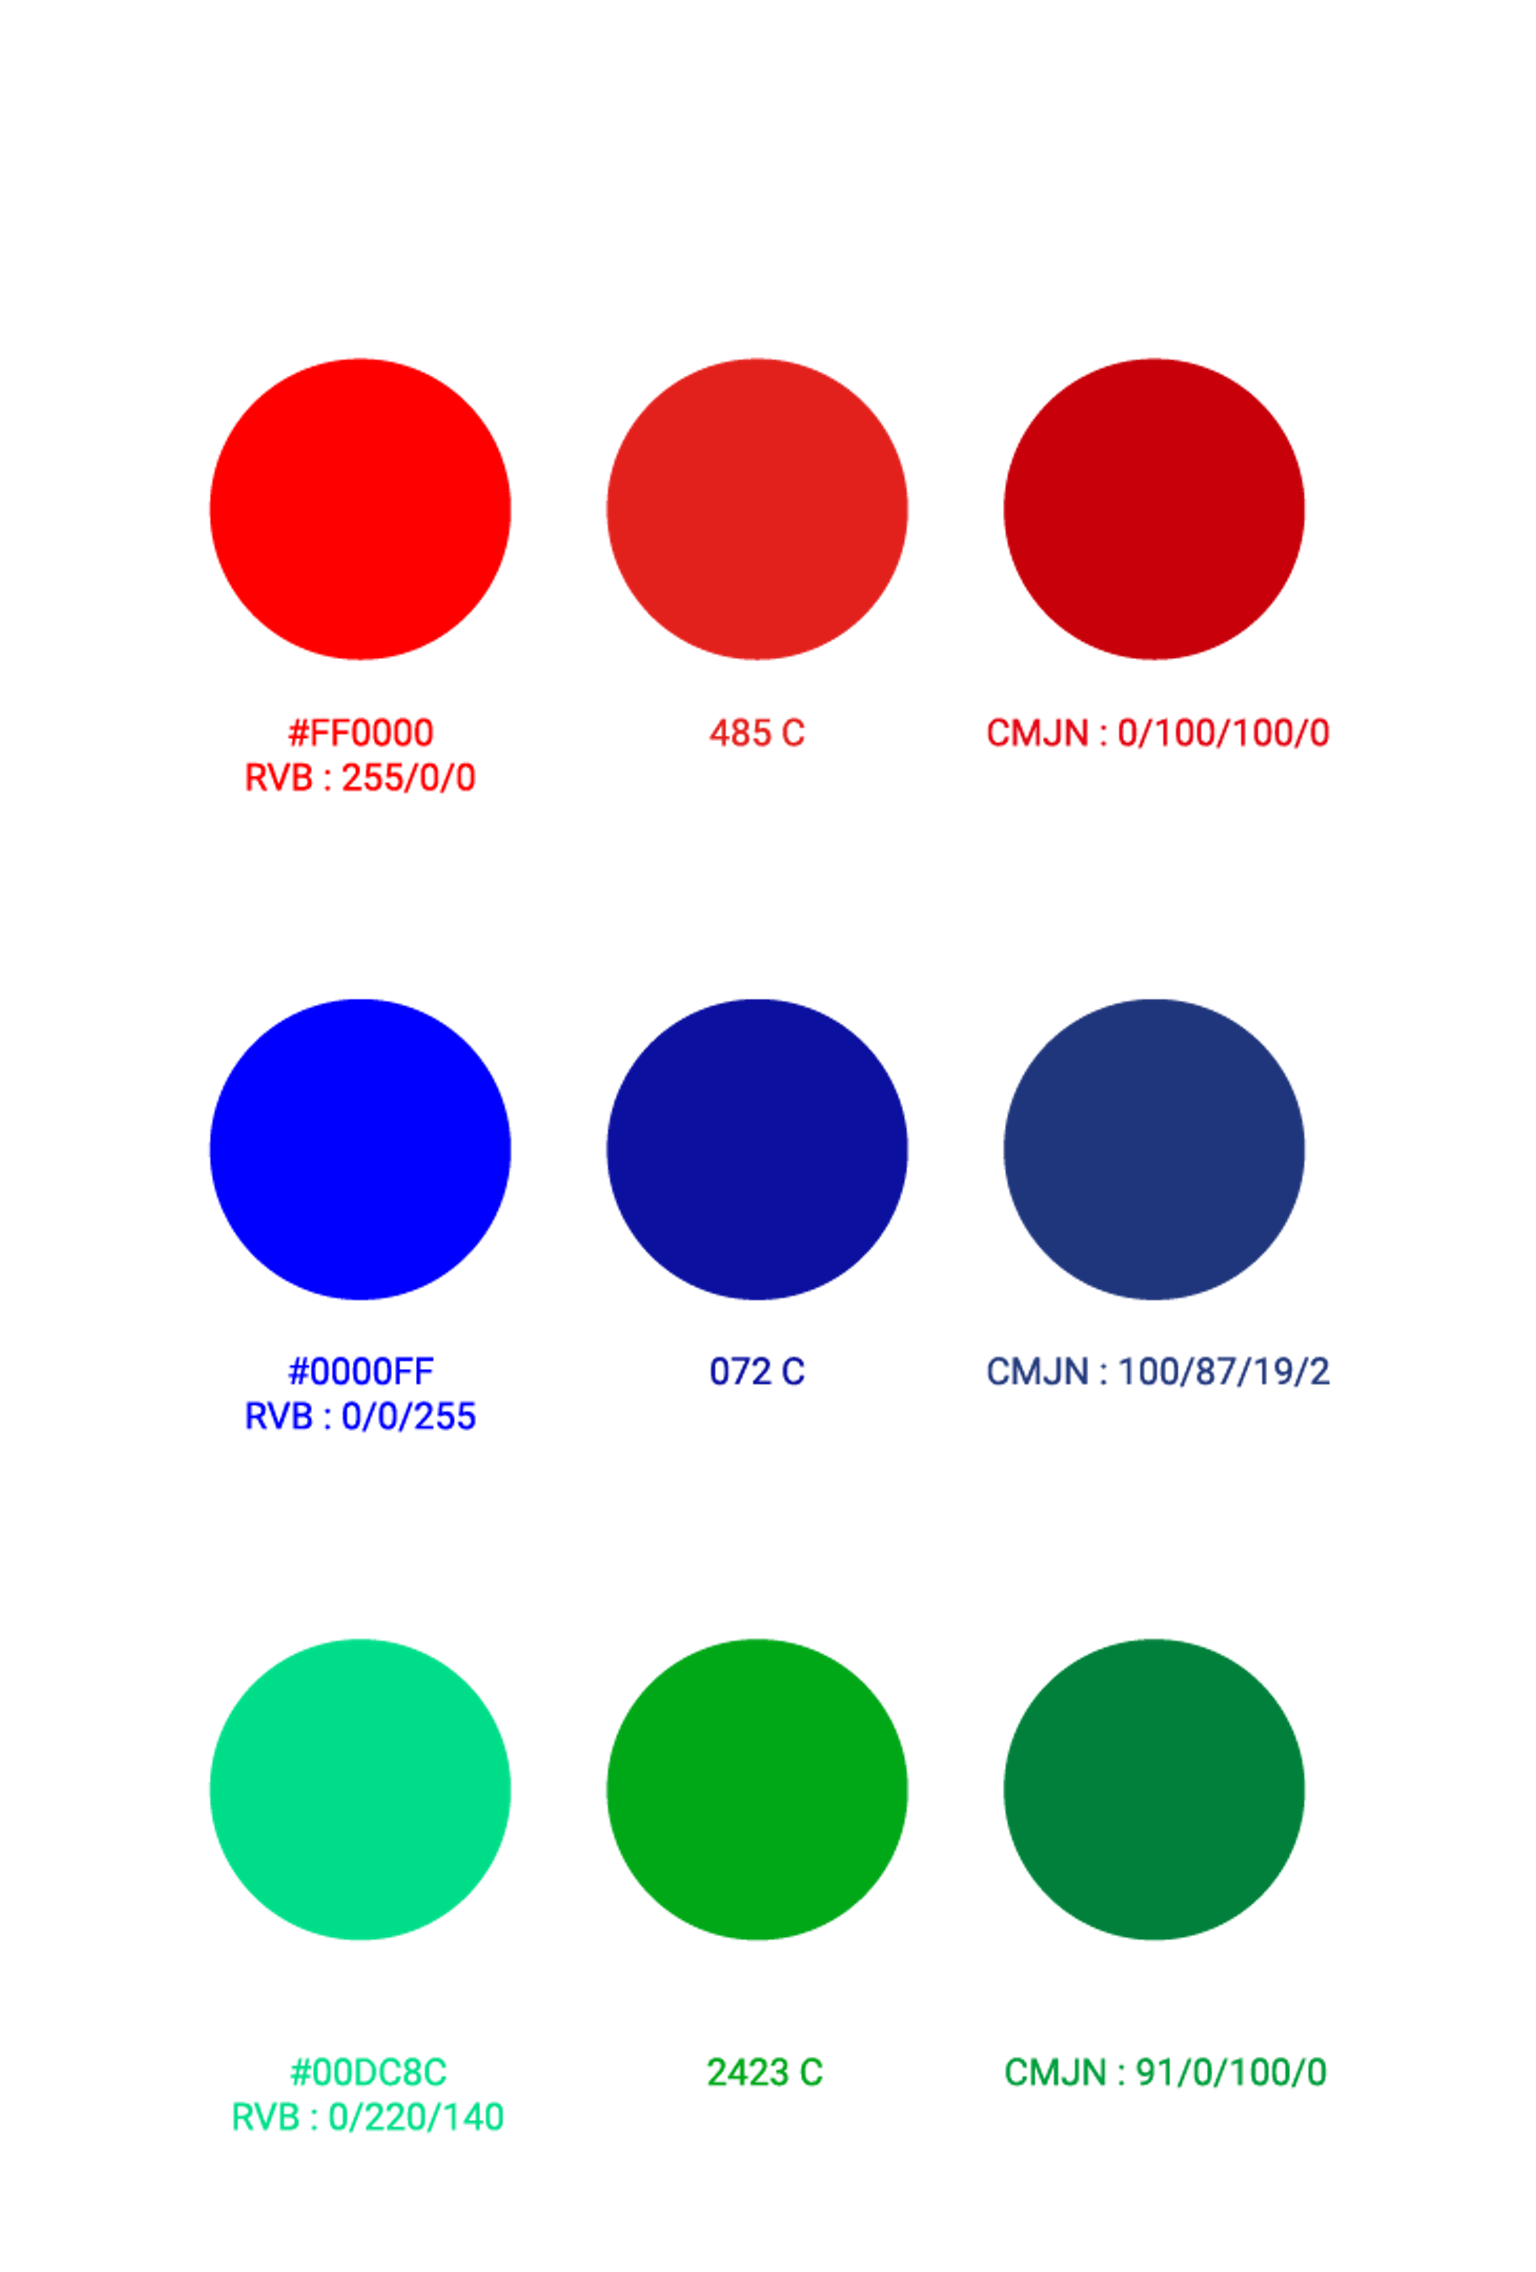 Palette de couleurs sélectionnée pour la nouvelle identité visuelle de Saint-Nazaire.